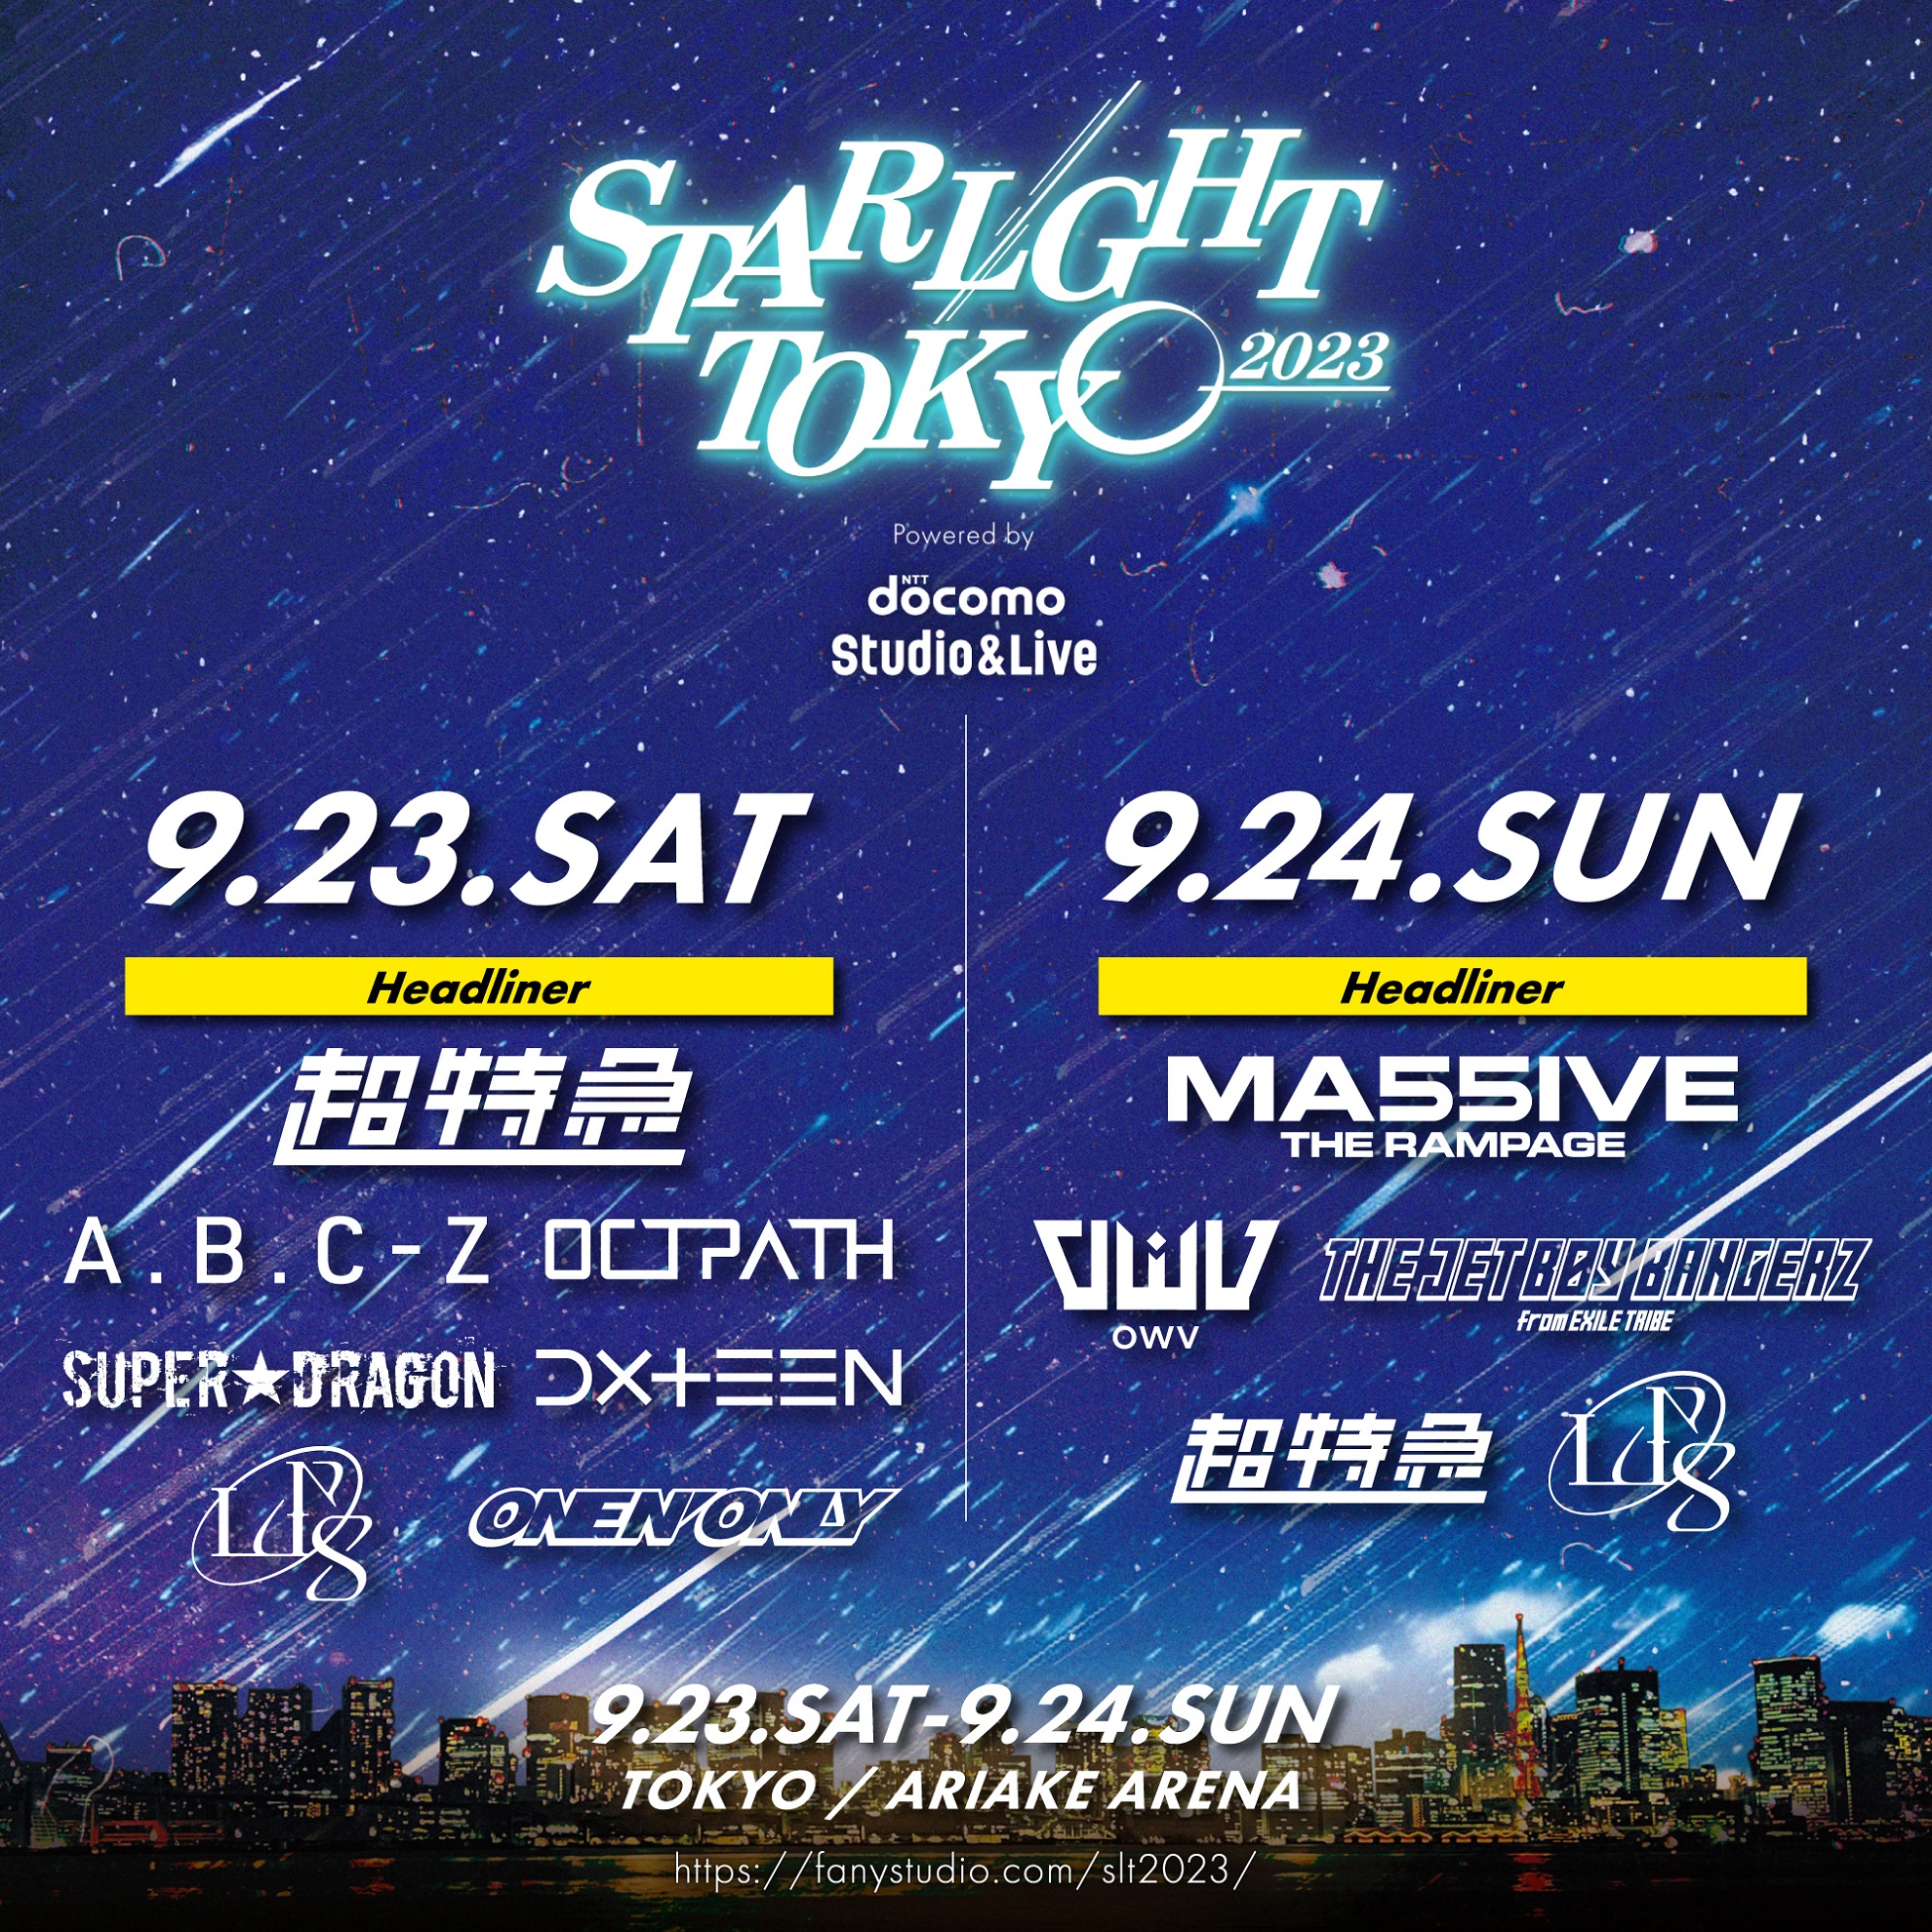 都市型音楽フェス「STARLIGHT TOKYO 2023」ドコモの映像配信サービス ...